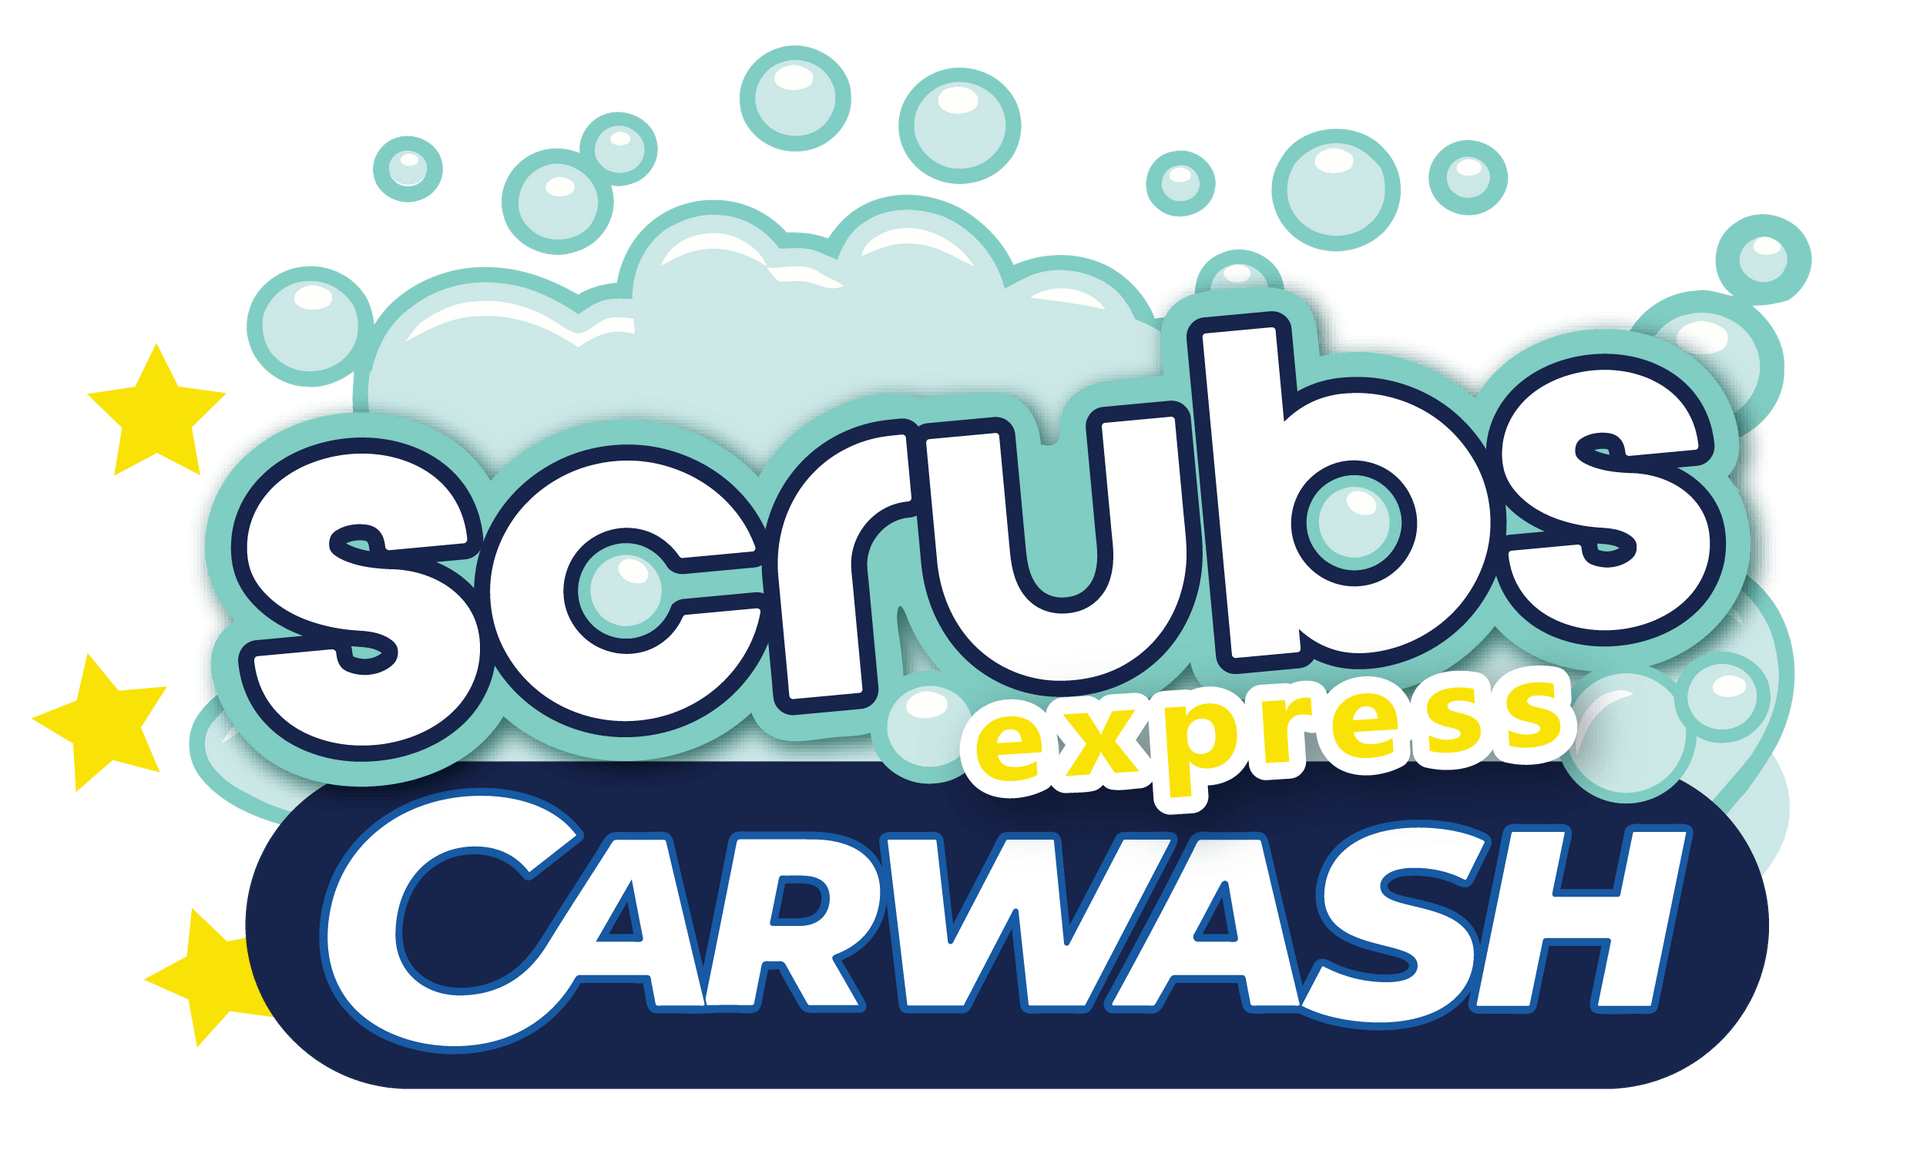 Scrubs Express Carwash Car Logo